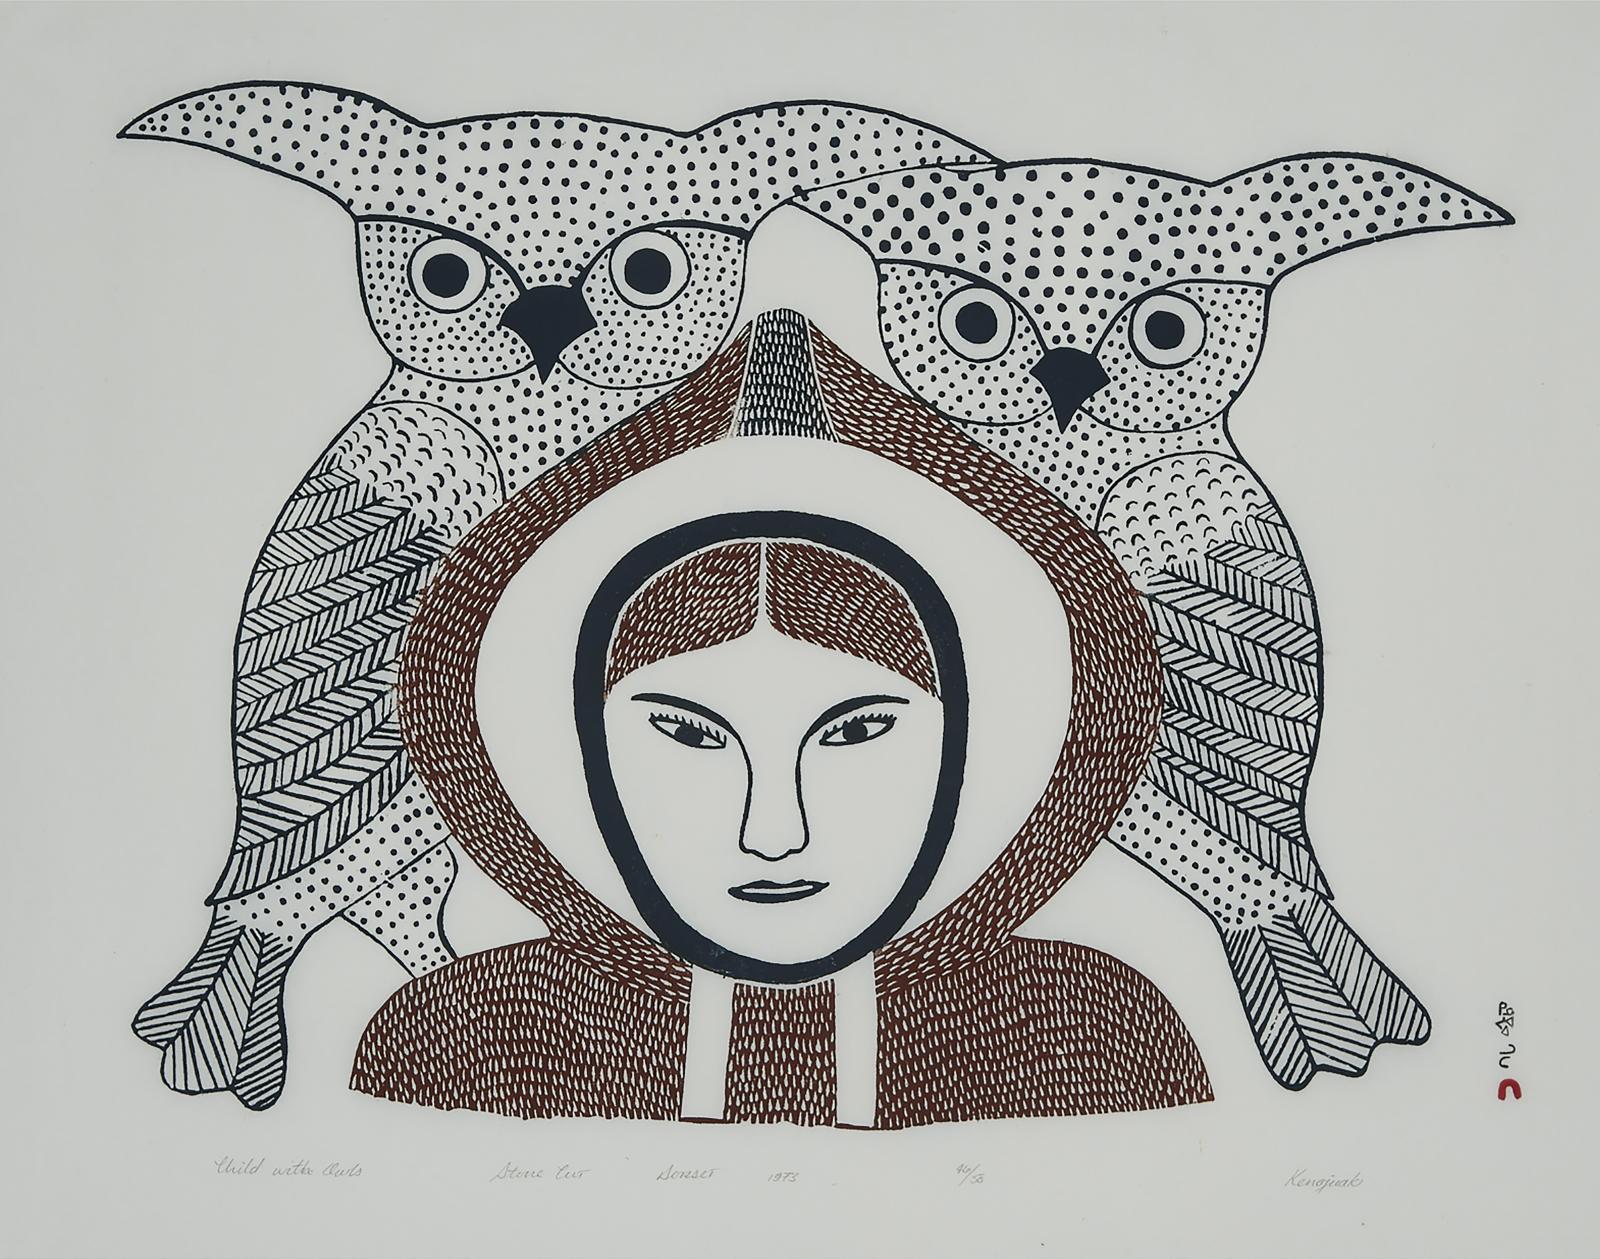 Kenojuak Ashevak (1927-2013) - Child With Owls